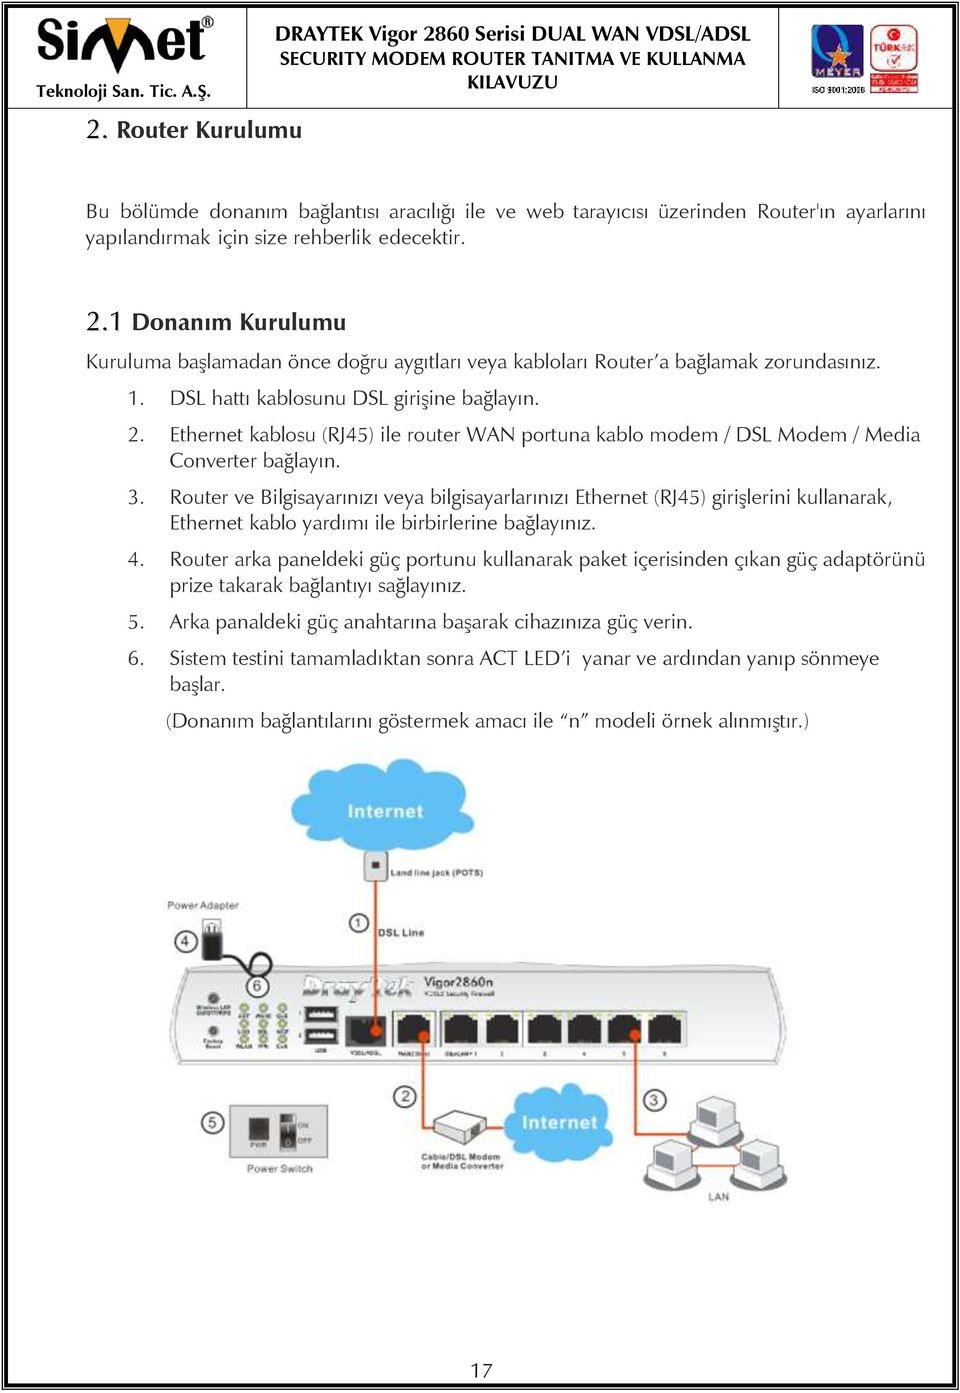 Ethernet kablosu (RJ45) ile router WAN portuna kablo modem / DSL Modem / Media Converter bağlayın. 3.